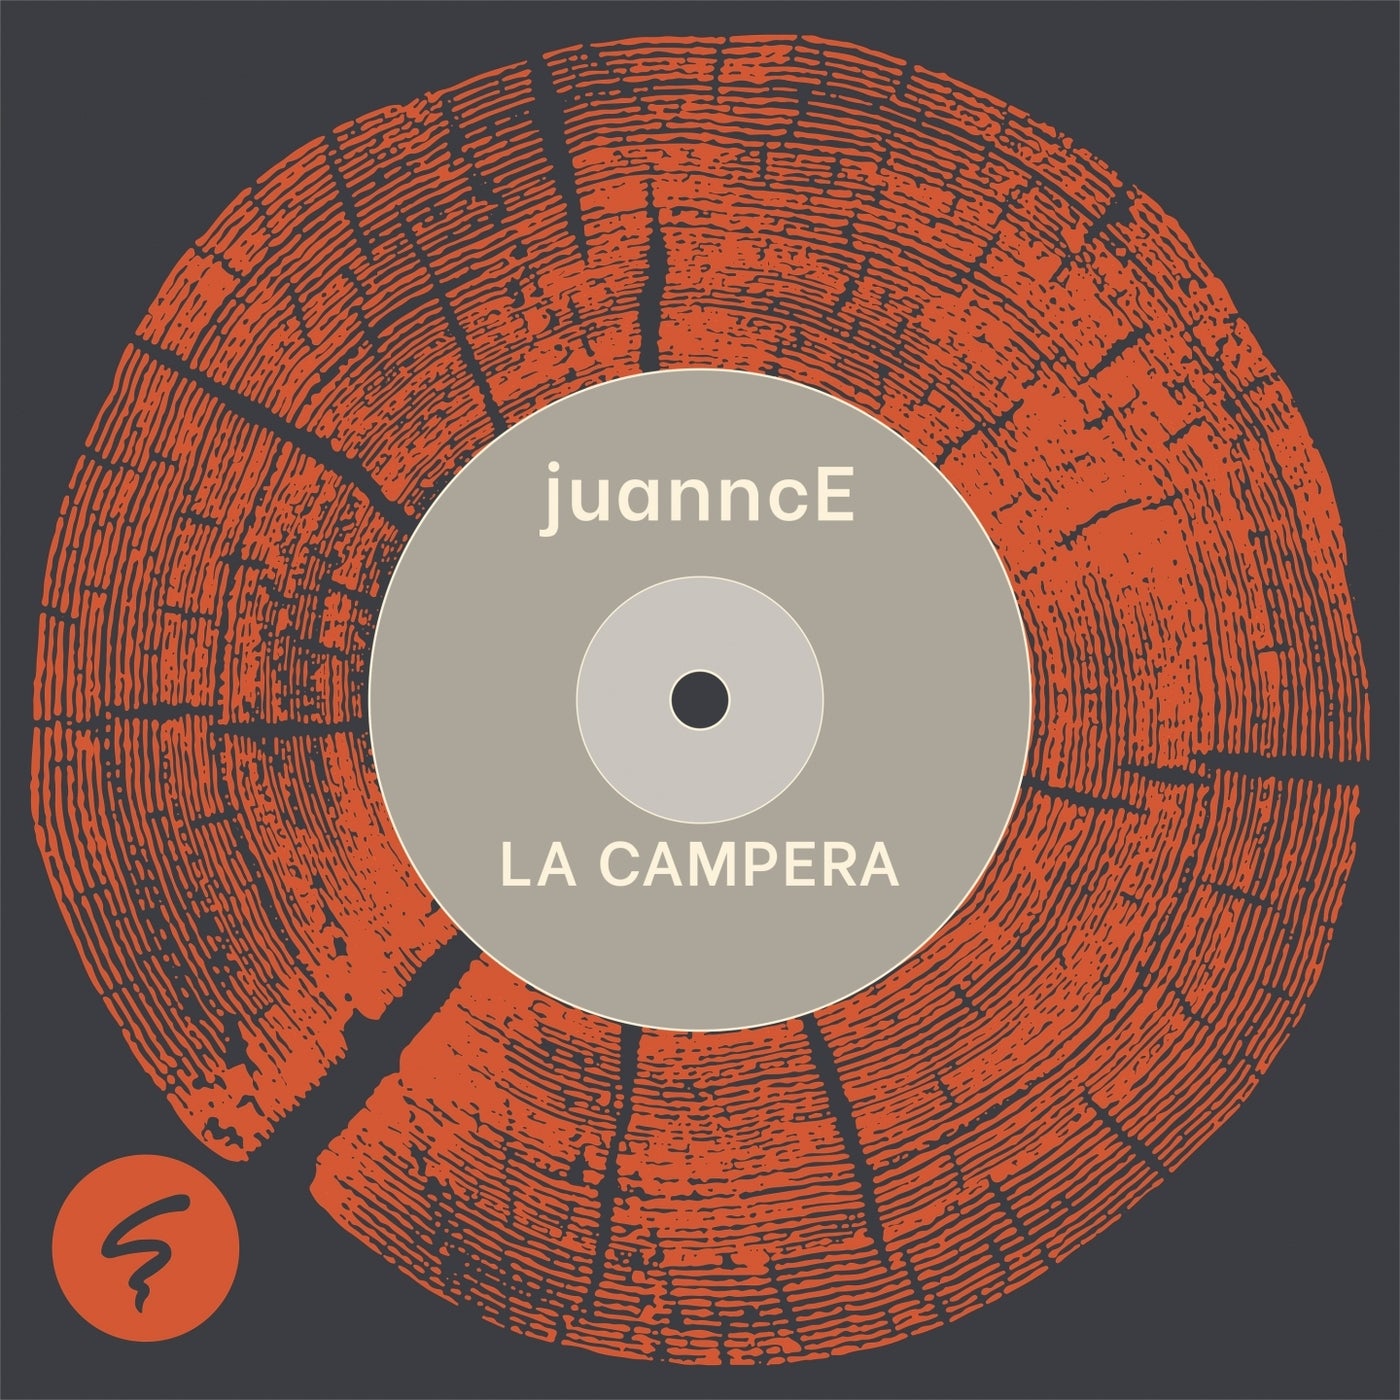 Juannce – La Campera [PA004]